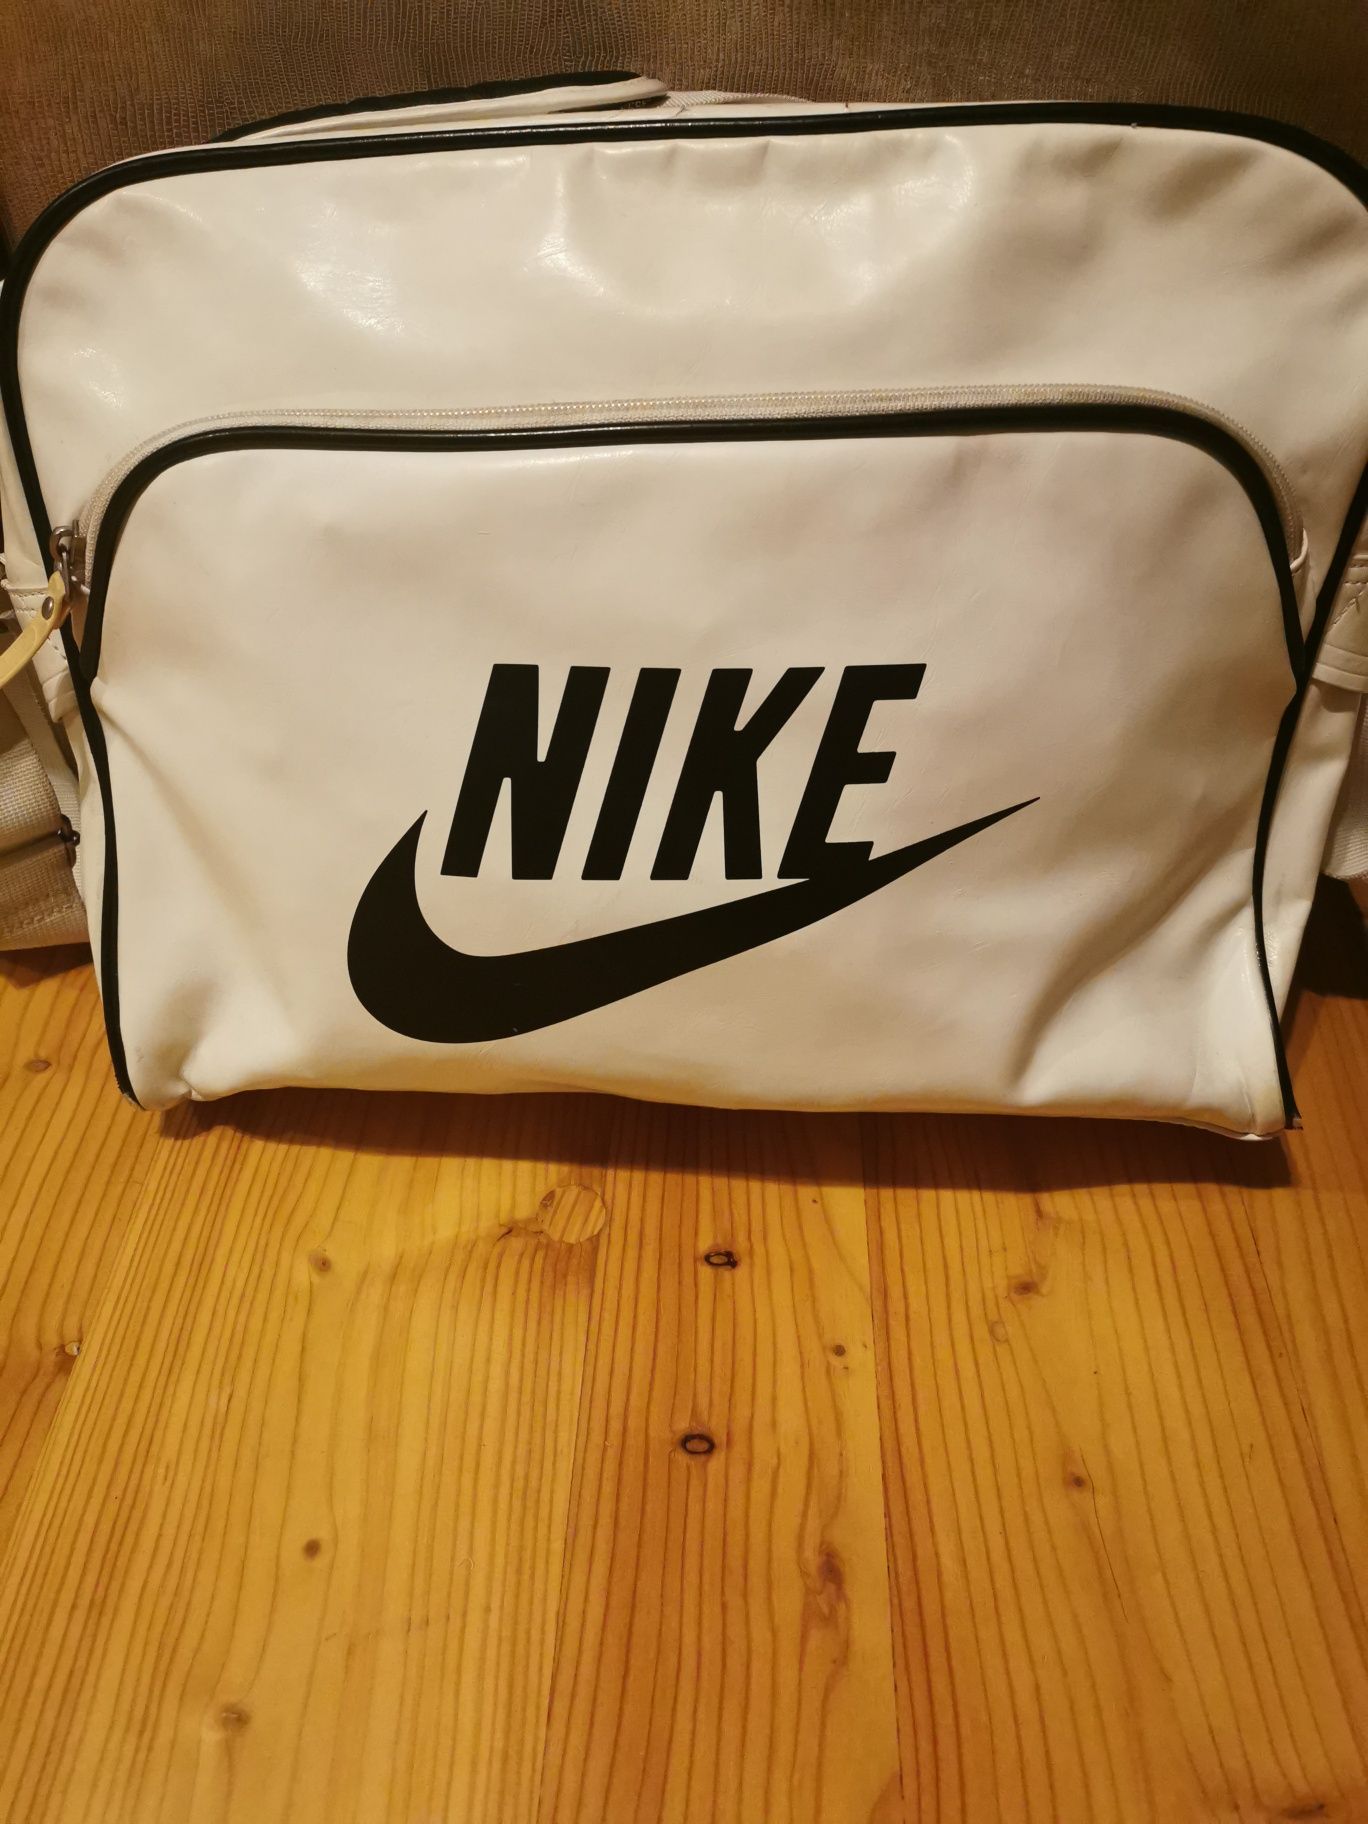 Torba Nike biała Sulisławice • OLX.pl